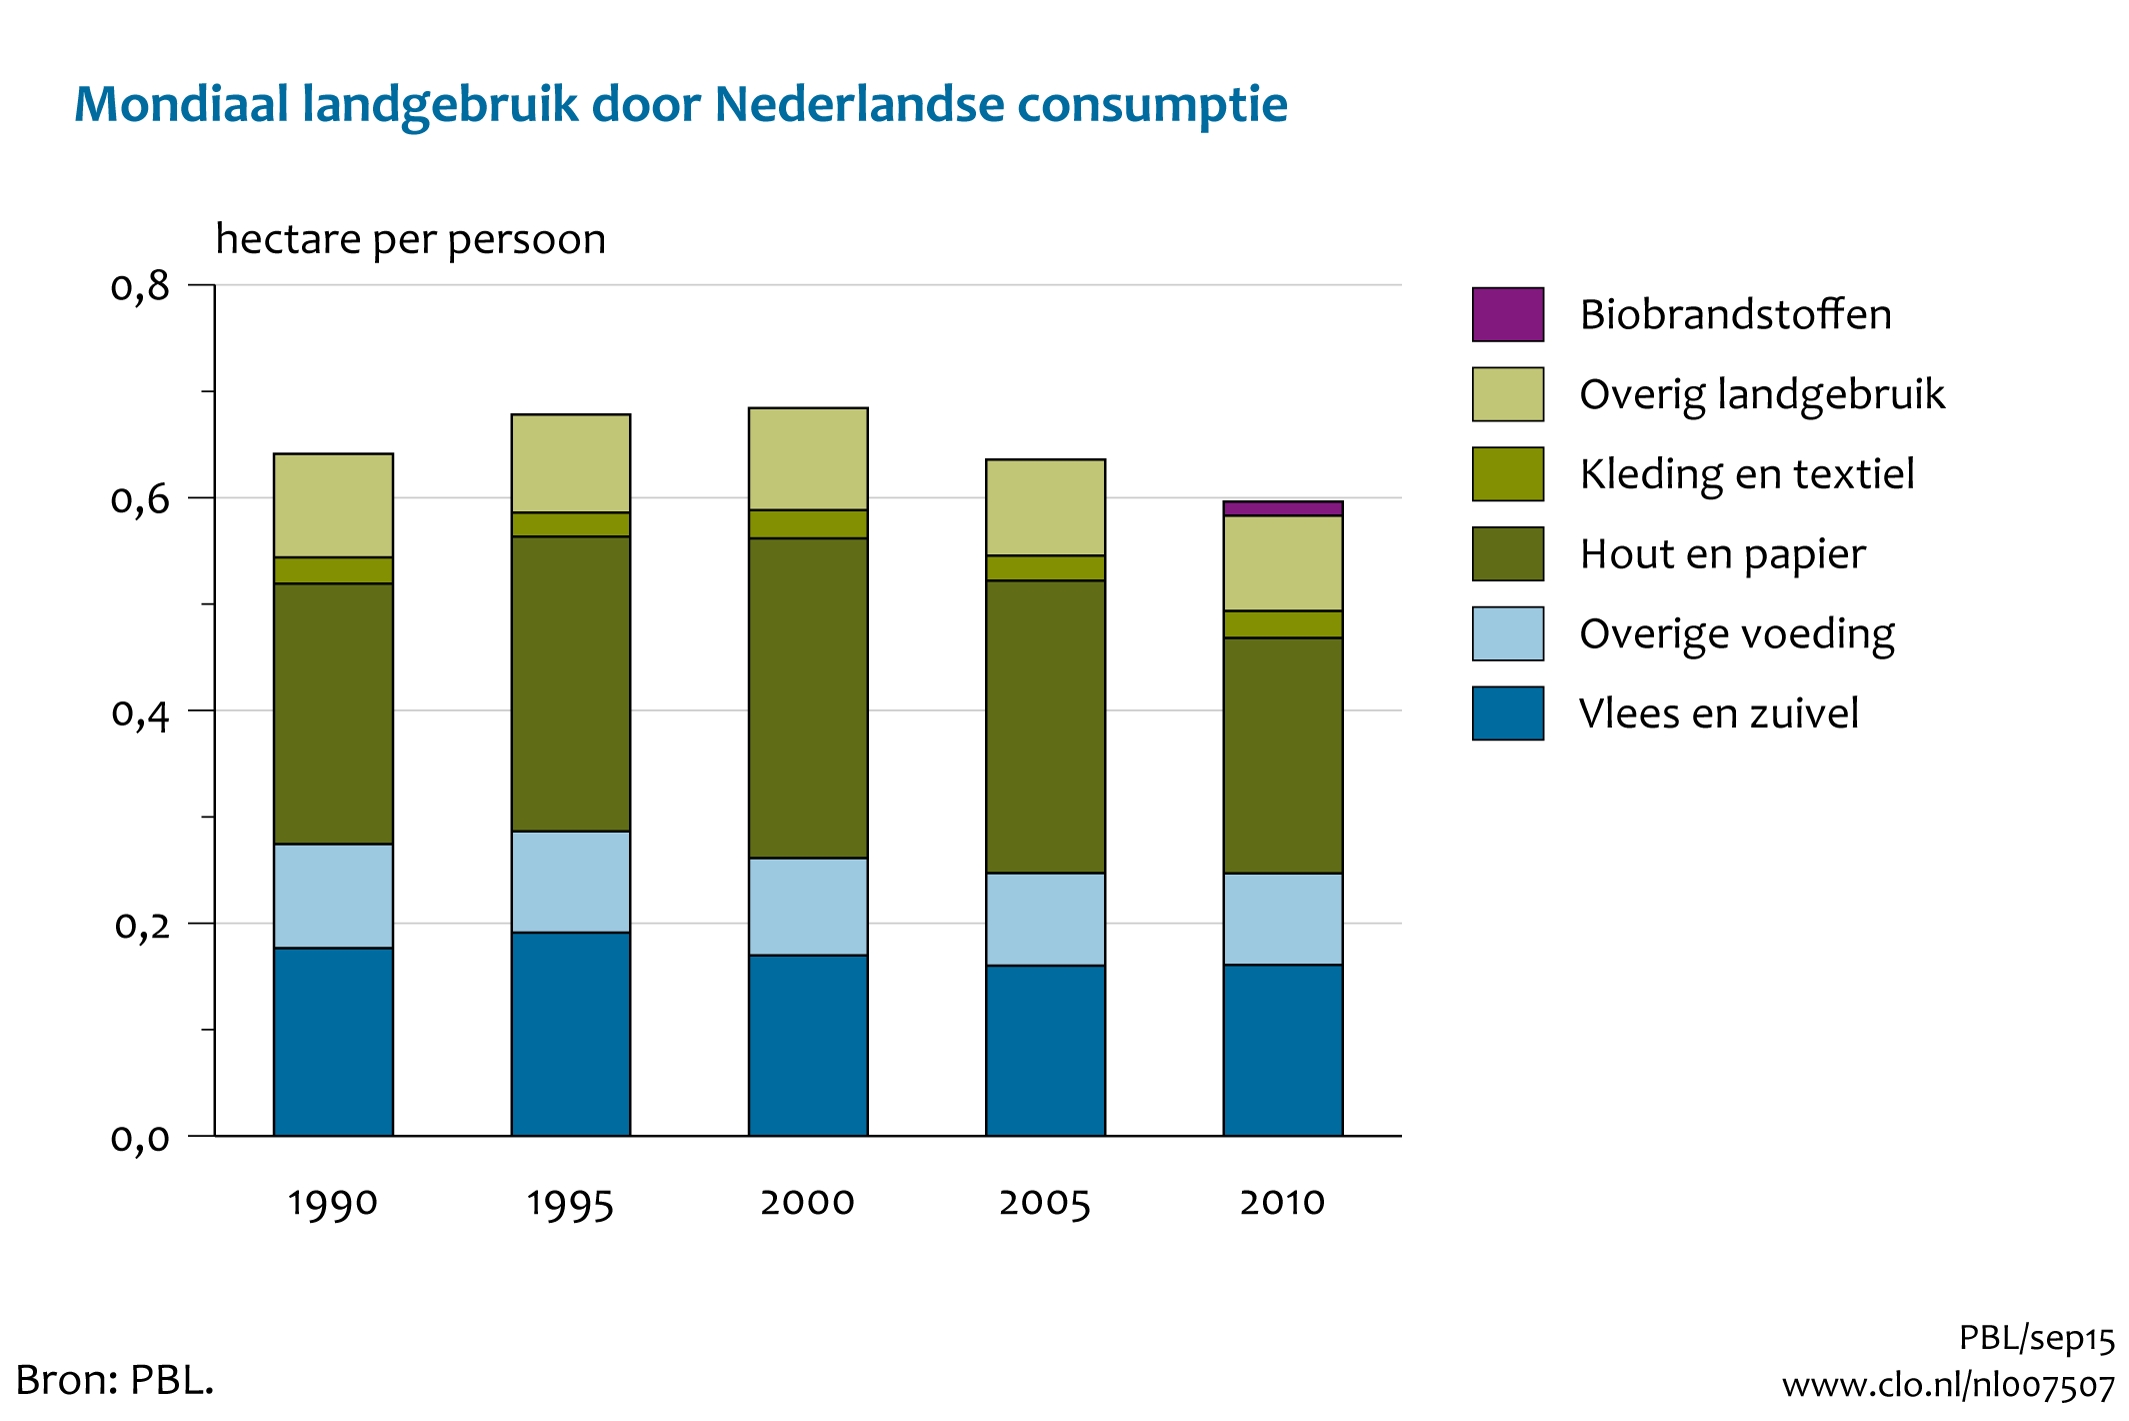 Figuur Mondiaal landgebruik door de Nederlandse consumptie per persoon. In de rest van de tekst wordt deze figuur uitgebreider uitgelegd.